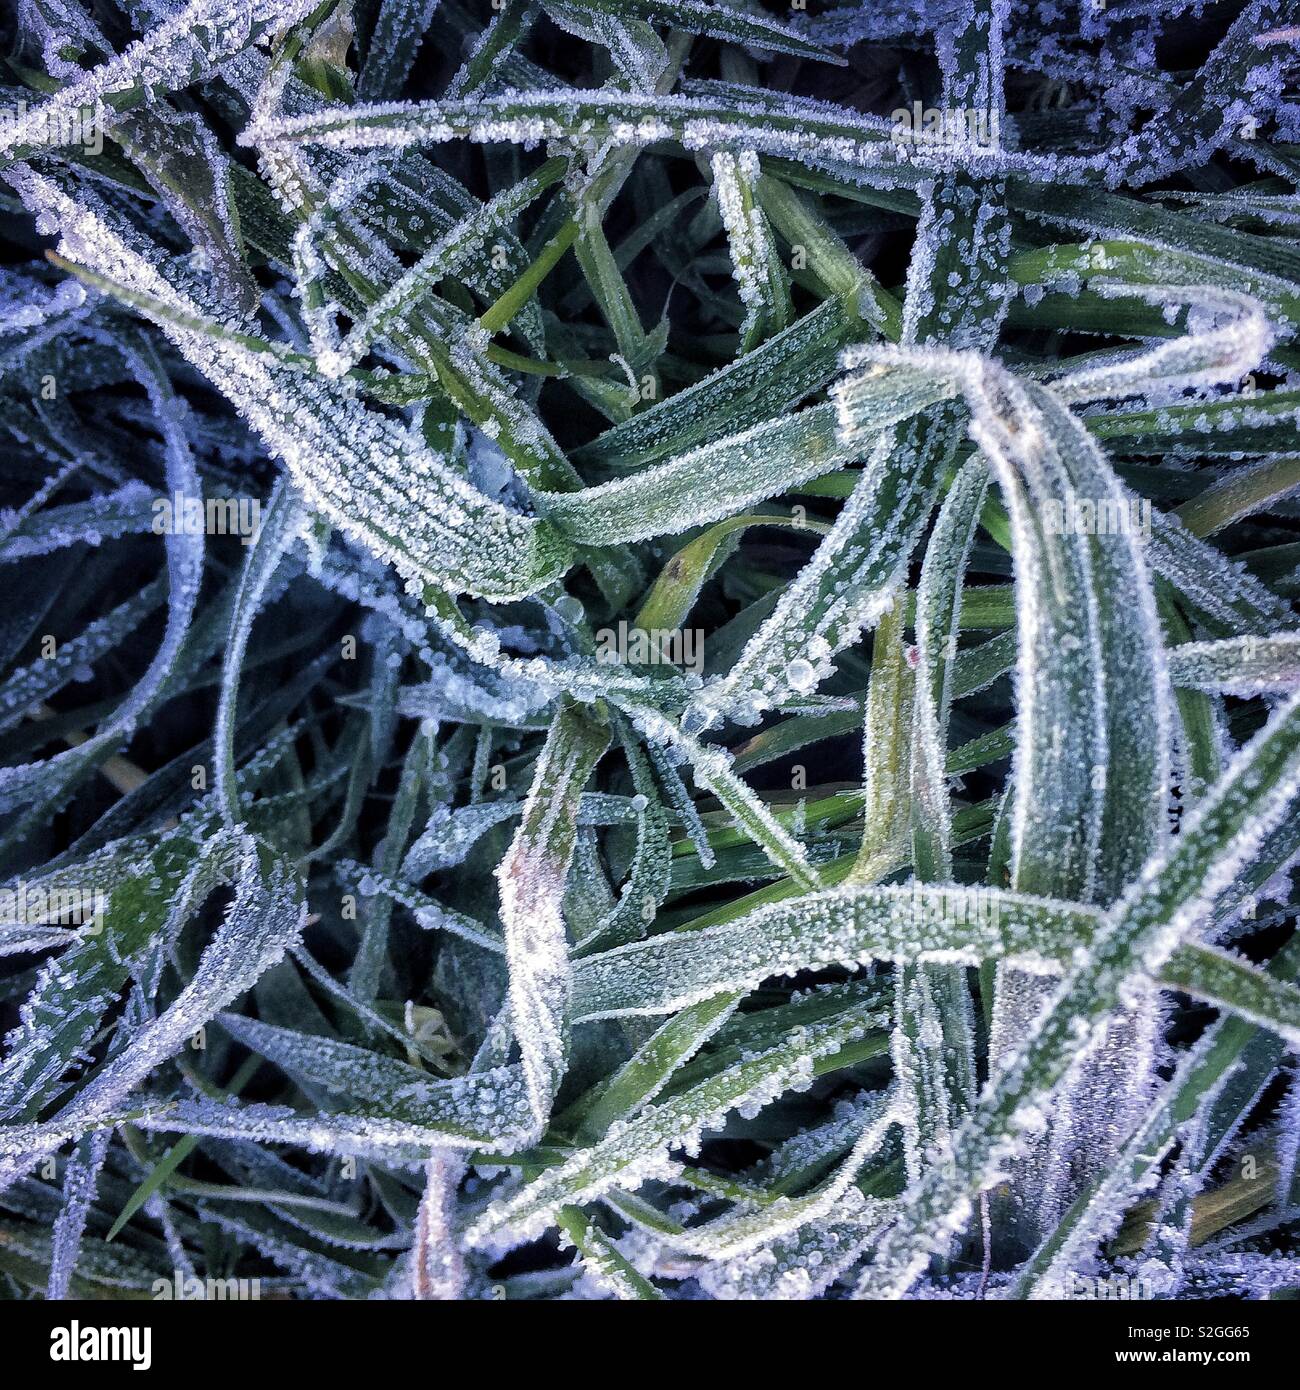 Frozen grass Stock Photo